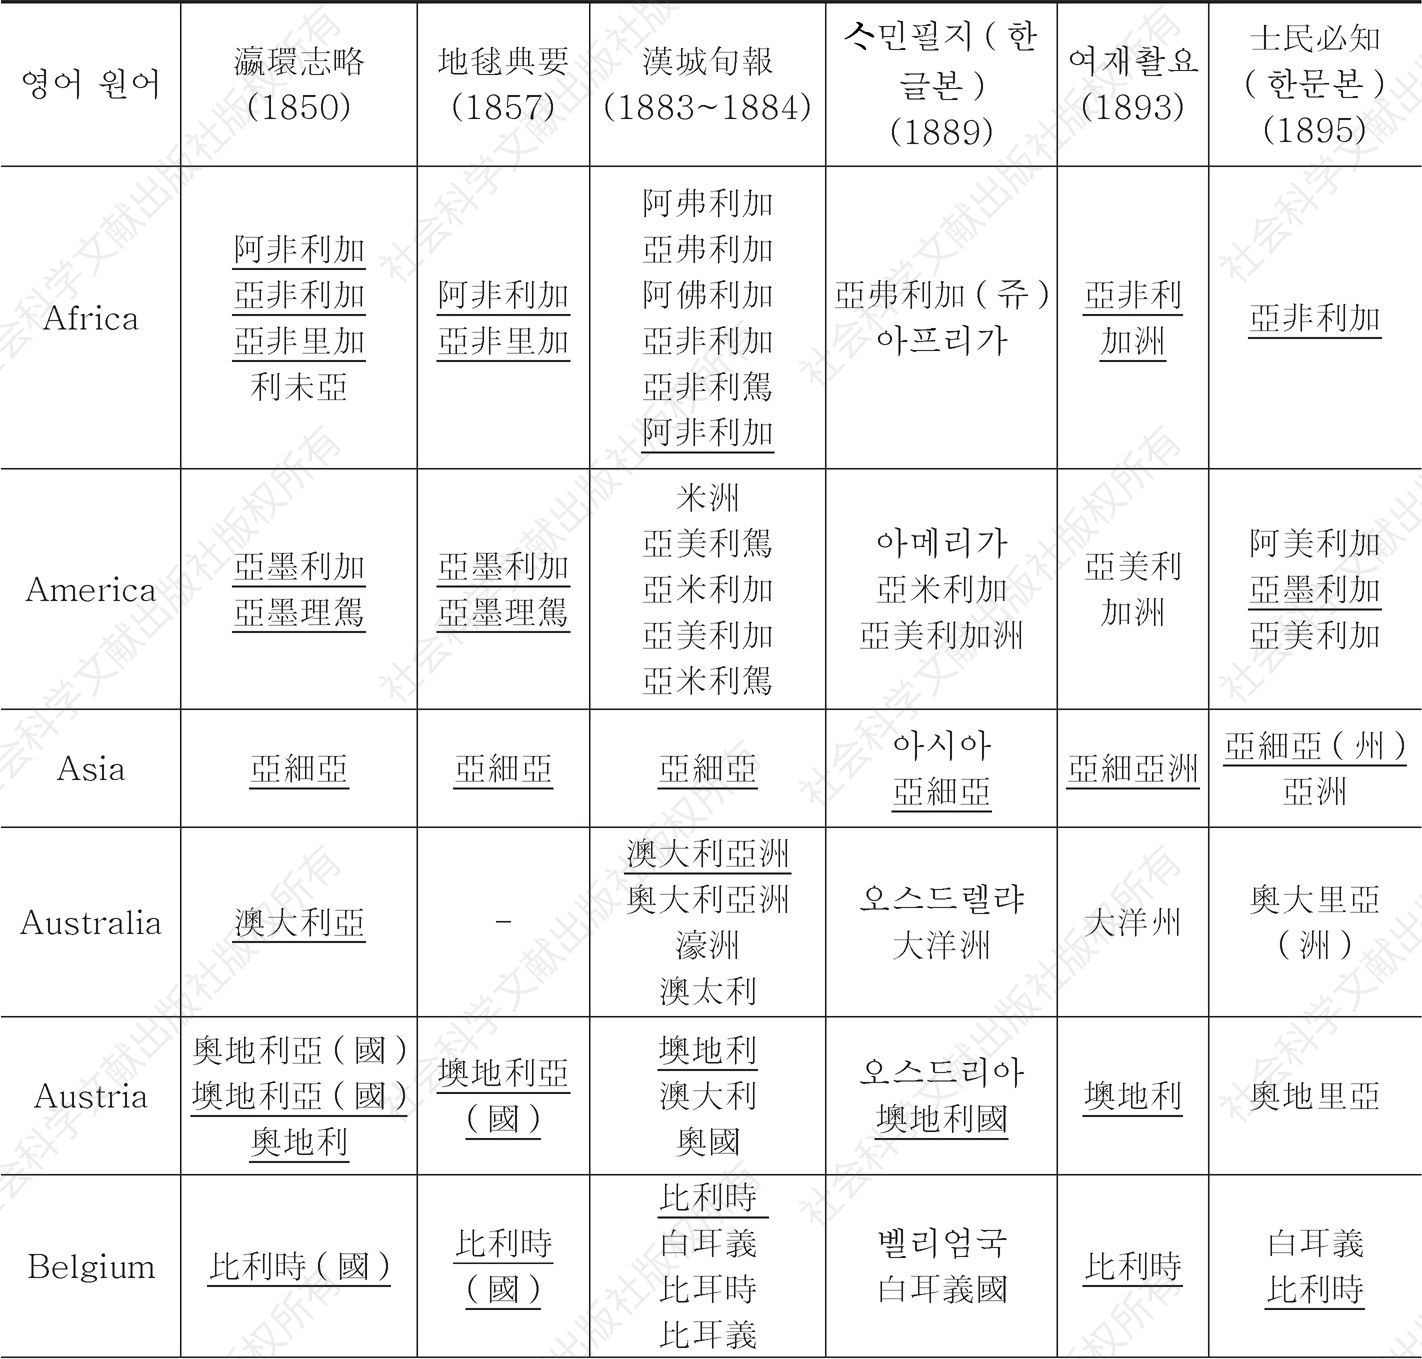 ＜표12＞ 『瀛環志略』과 개화기 한국어 자료에 등재된 국명 표기 대조